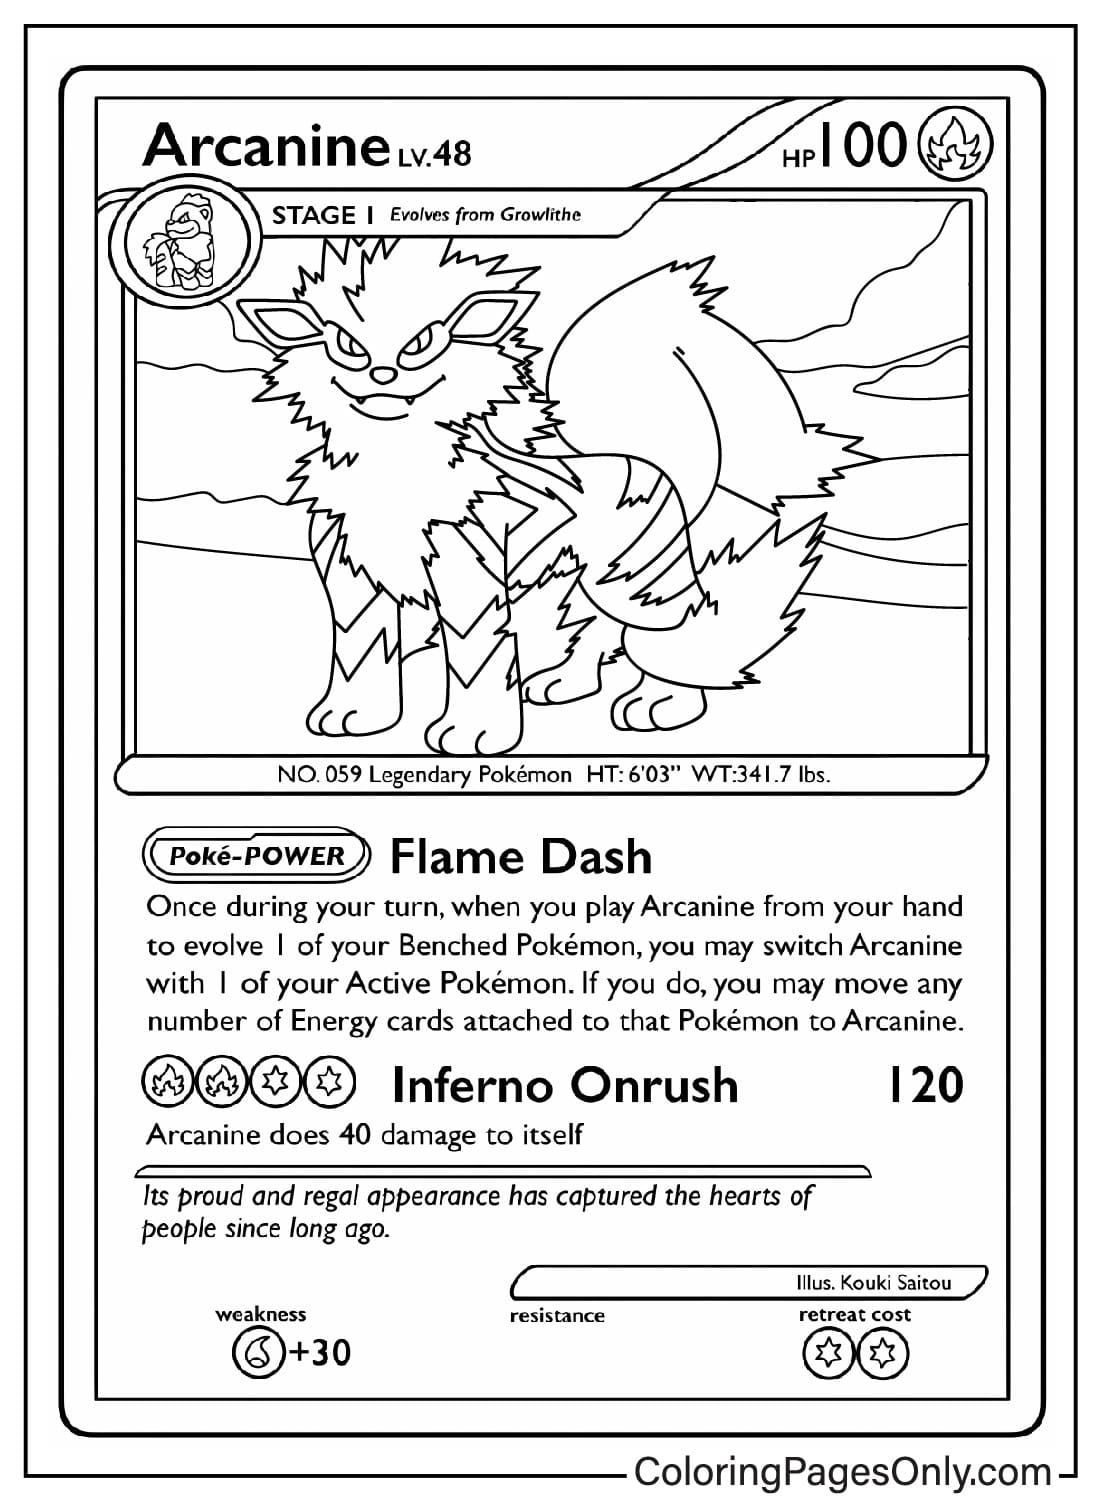 Arcanine Pokemon kaart kleurplaat van Pokemon Card